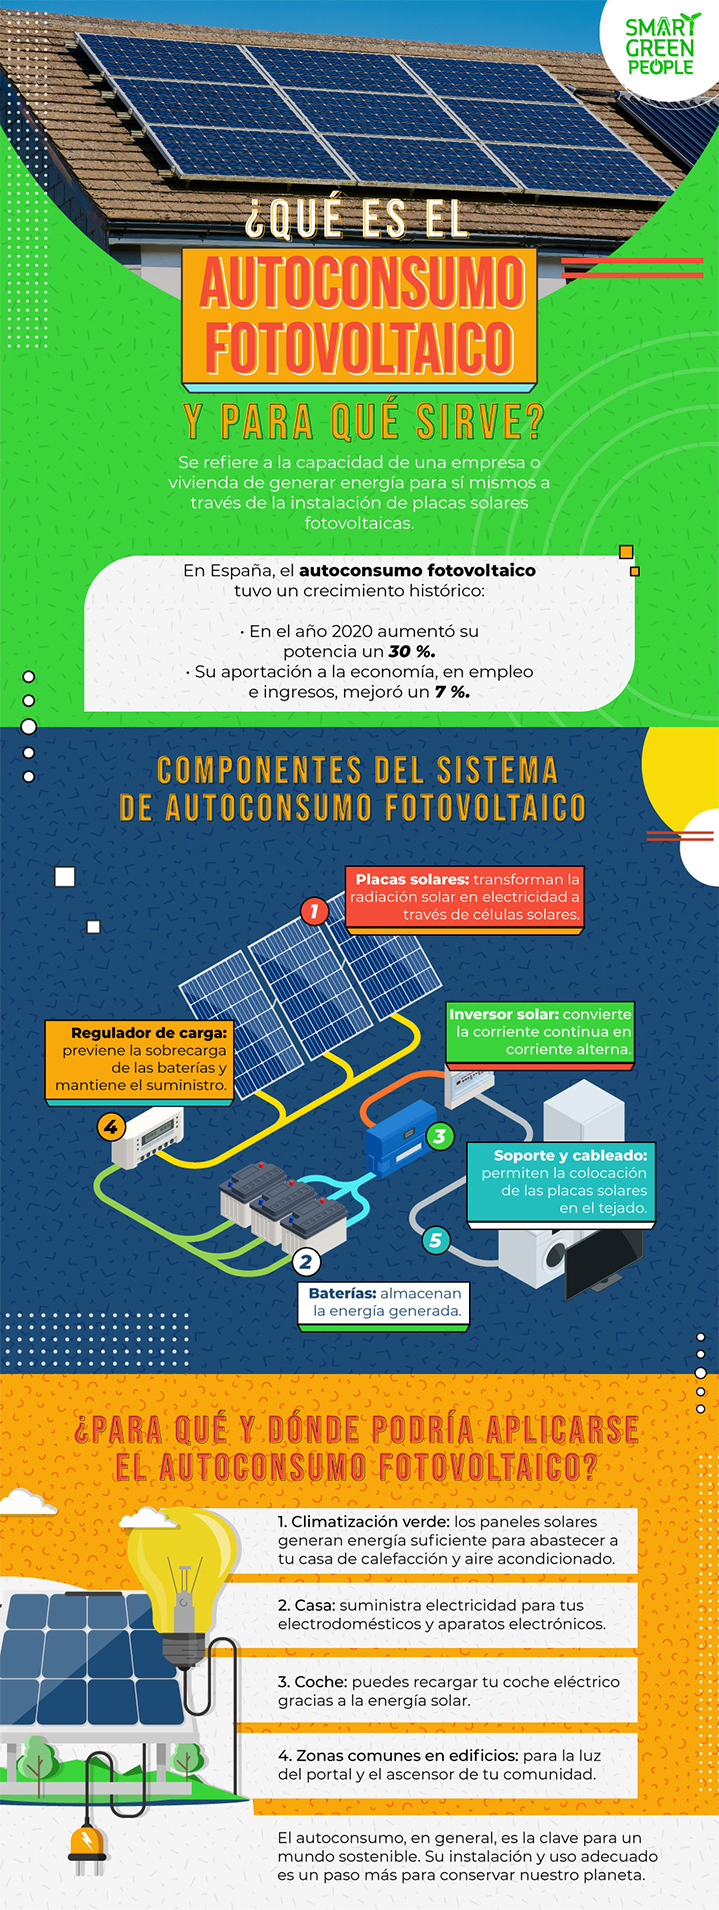 Autoconsumo fotovoltaico: energía limpia para el hogar | SmartGreen